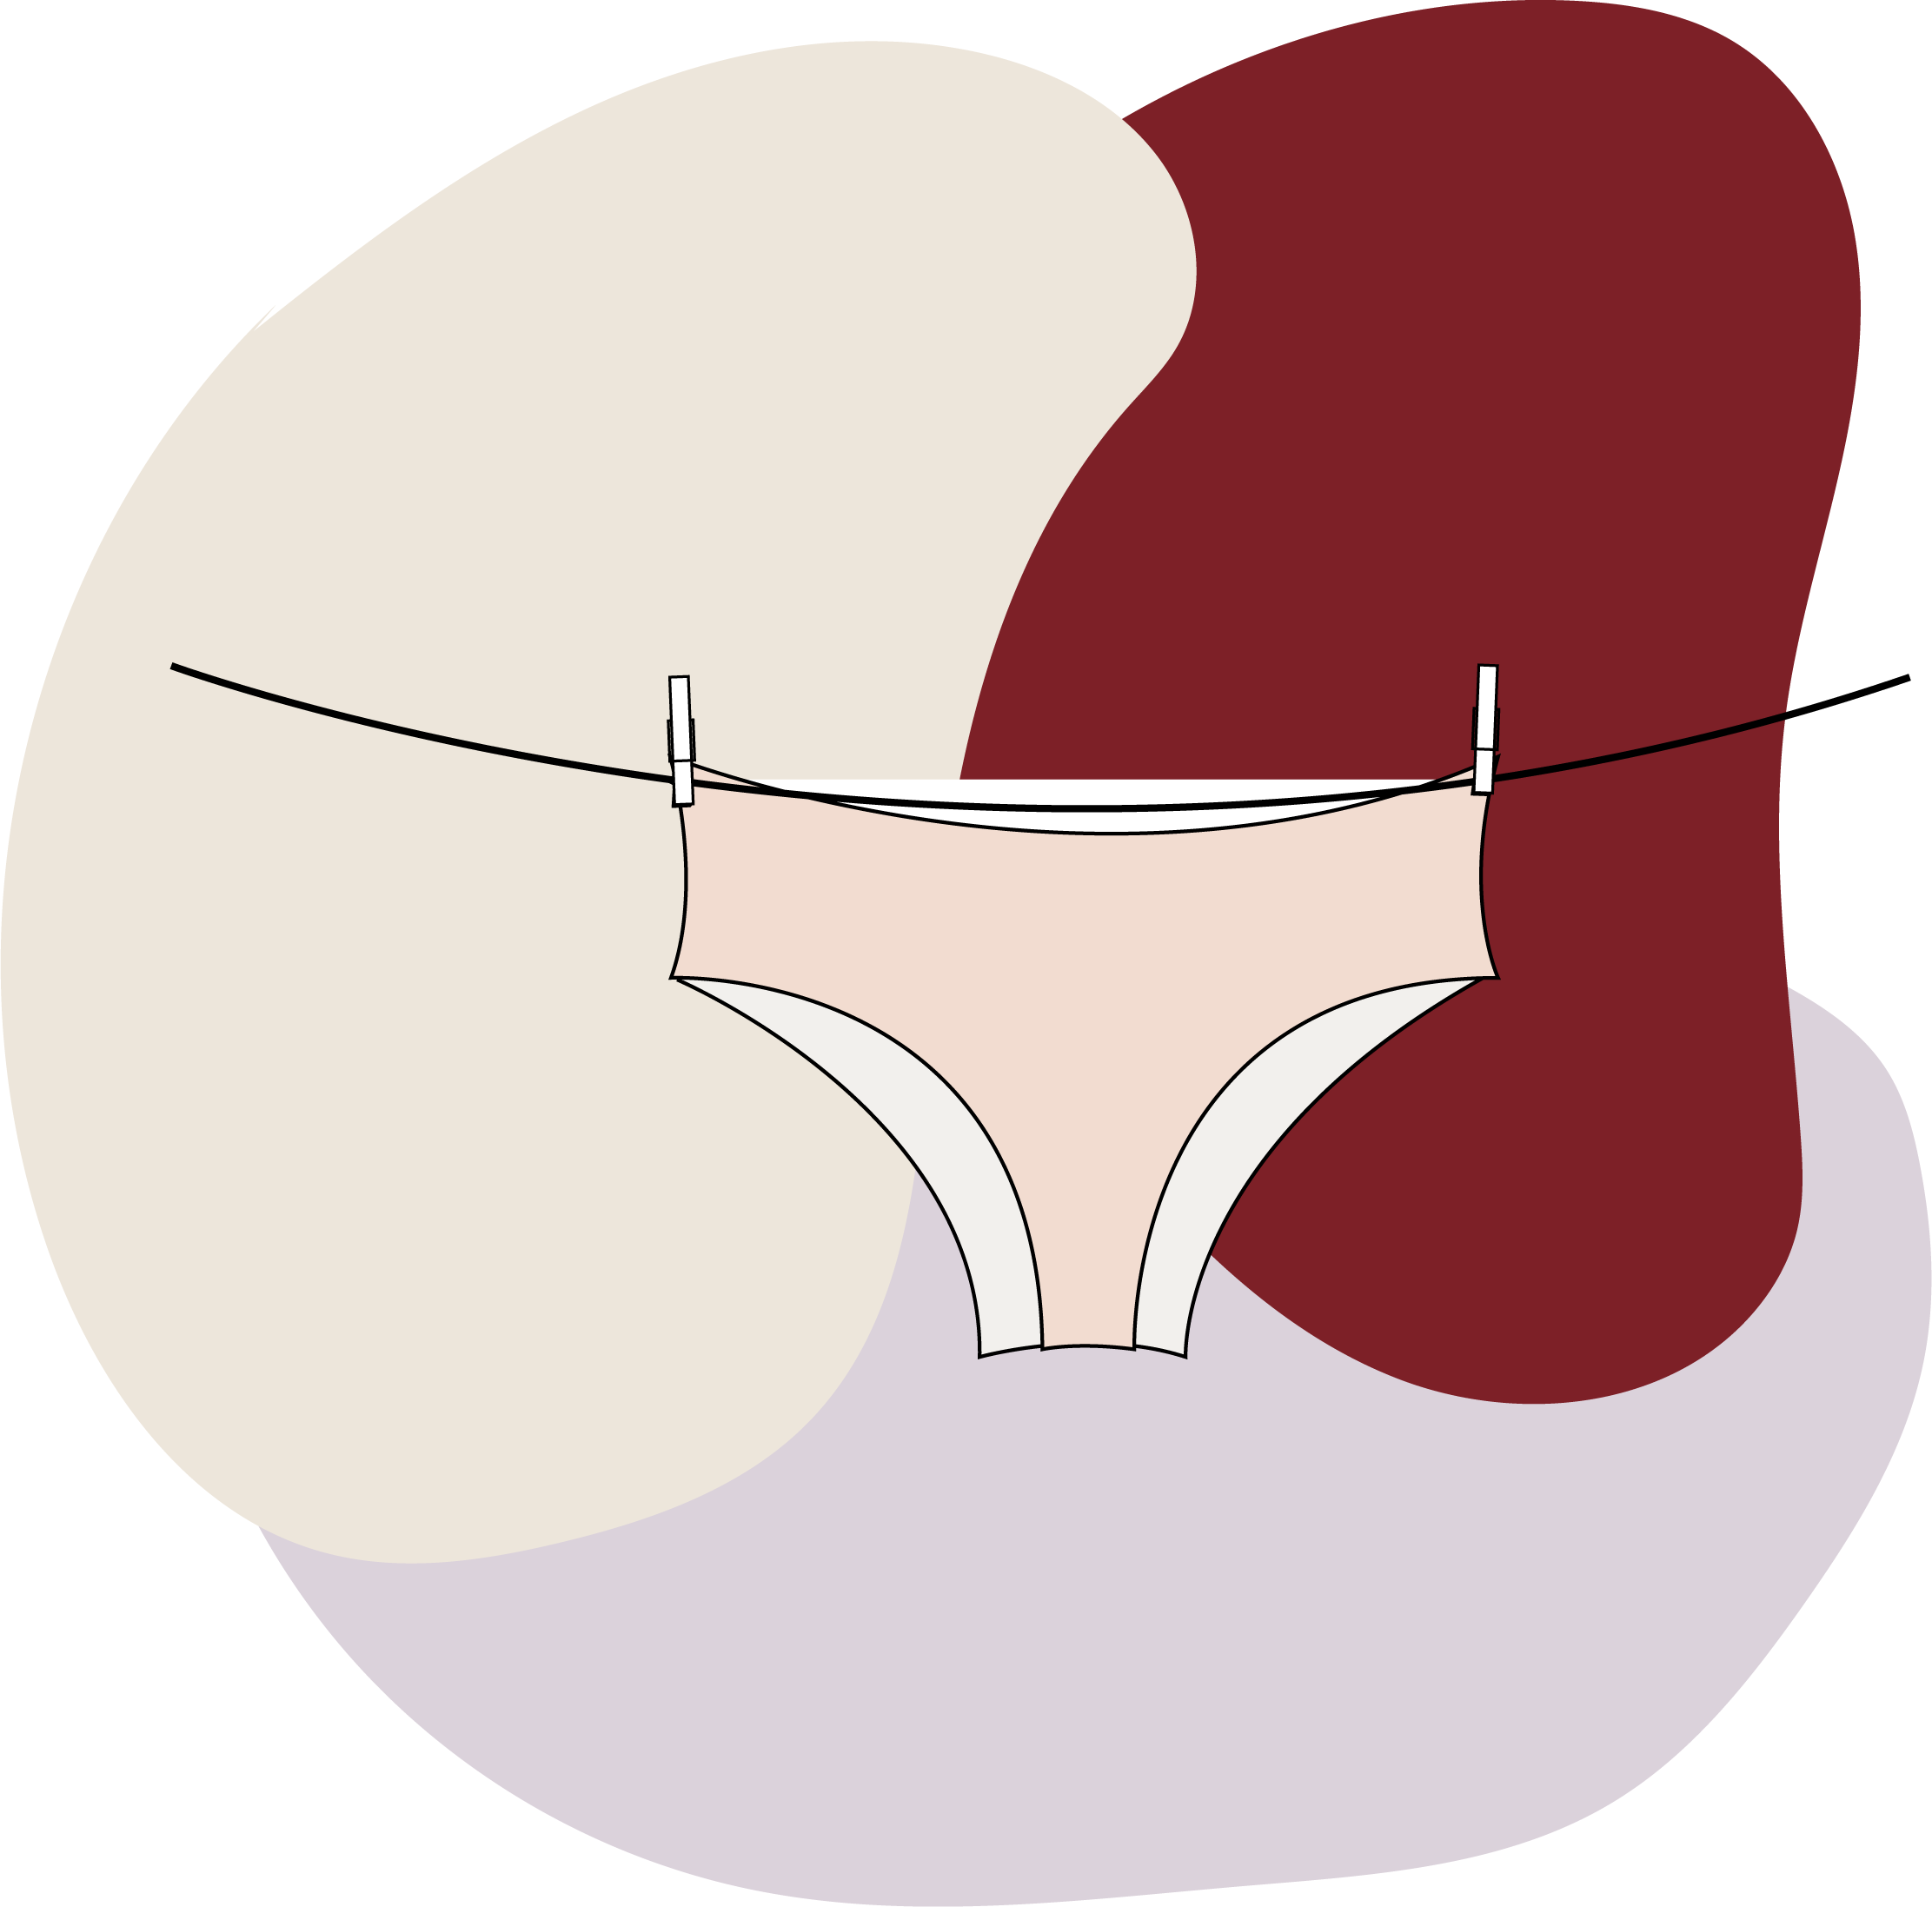 Entretien et lavage des culottes menstruelles - Le Comptoir Des Lunes